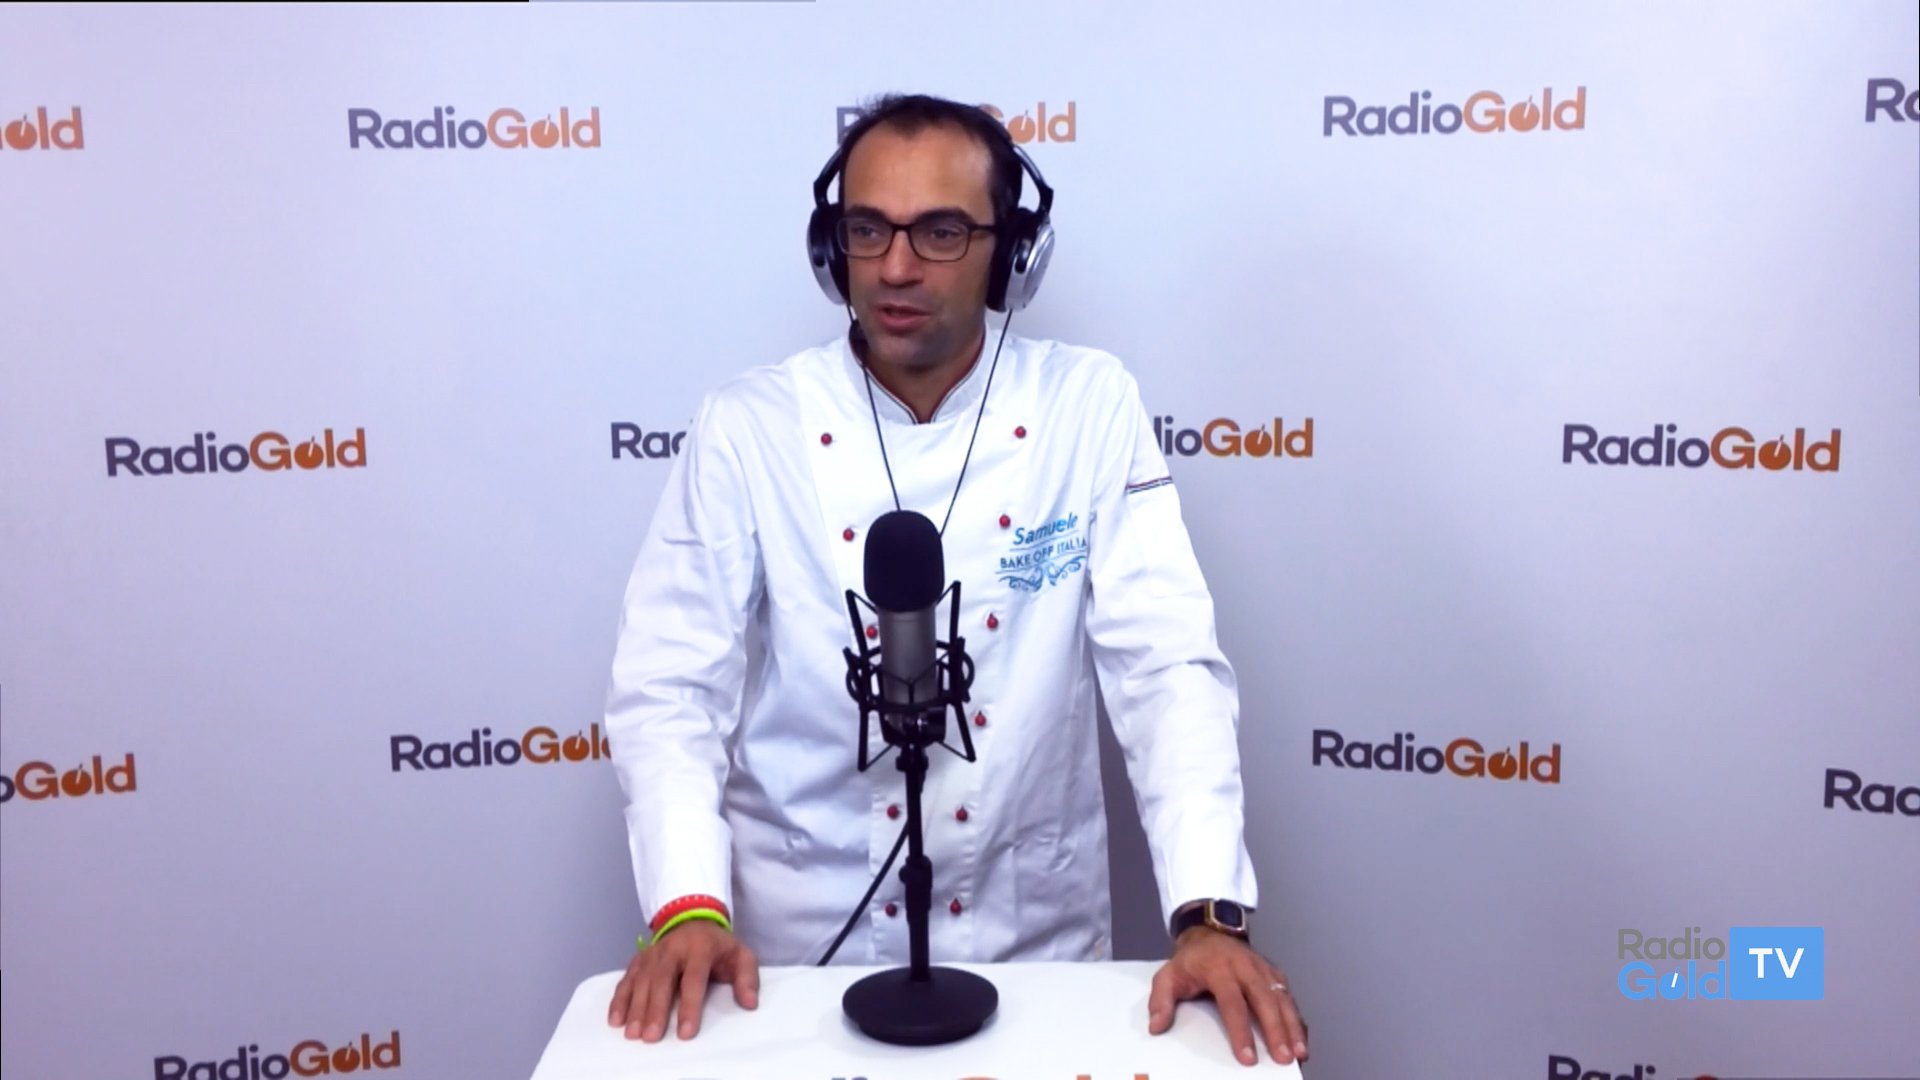 Su RadioGold e RadioGold Tv un’altra dolce ricetta dello chef Samuele Calzari